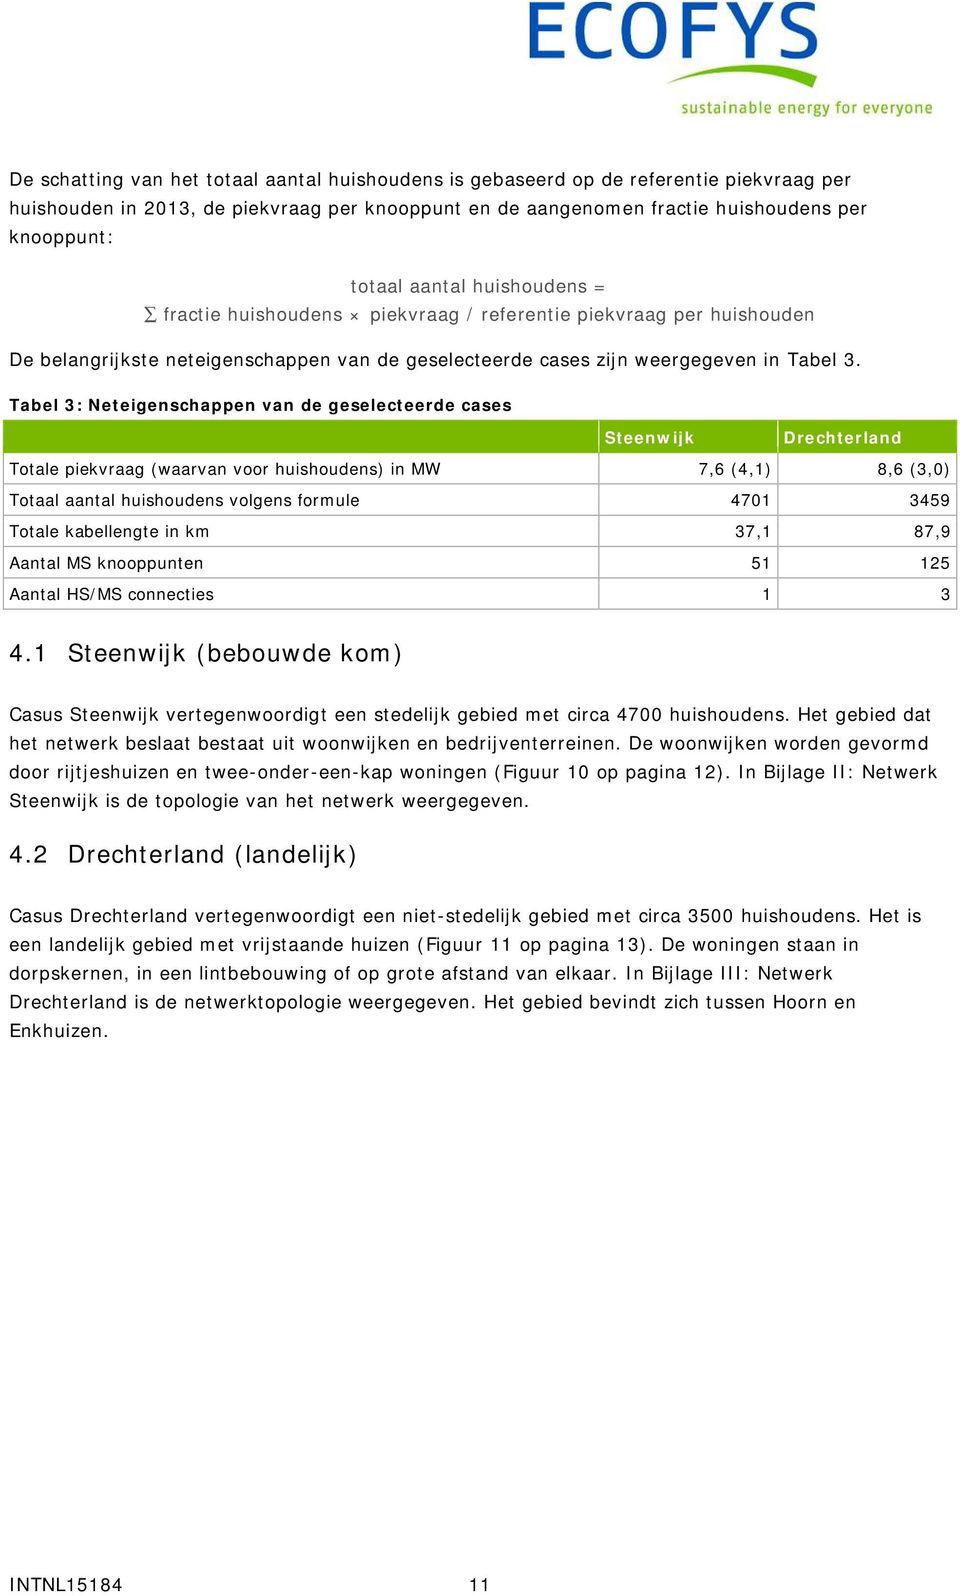 Tabel 3: Neteigenschappen van de geselecteerde cases Steenwijk Drechterland Totale piekvraag (waarvan voor huishoudens) in MW 7,6 (4,1) 8,6 (3,0) Totaal aantal huishoudens volgens formule 4701 3459